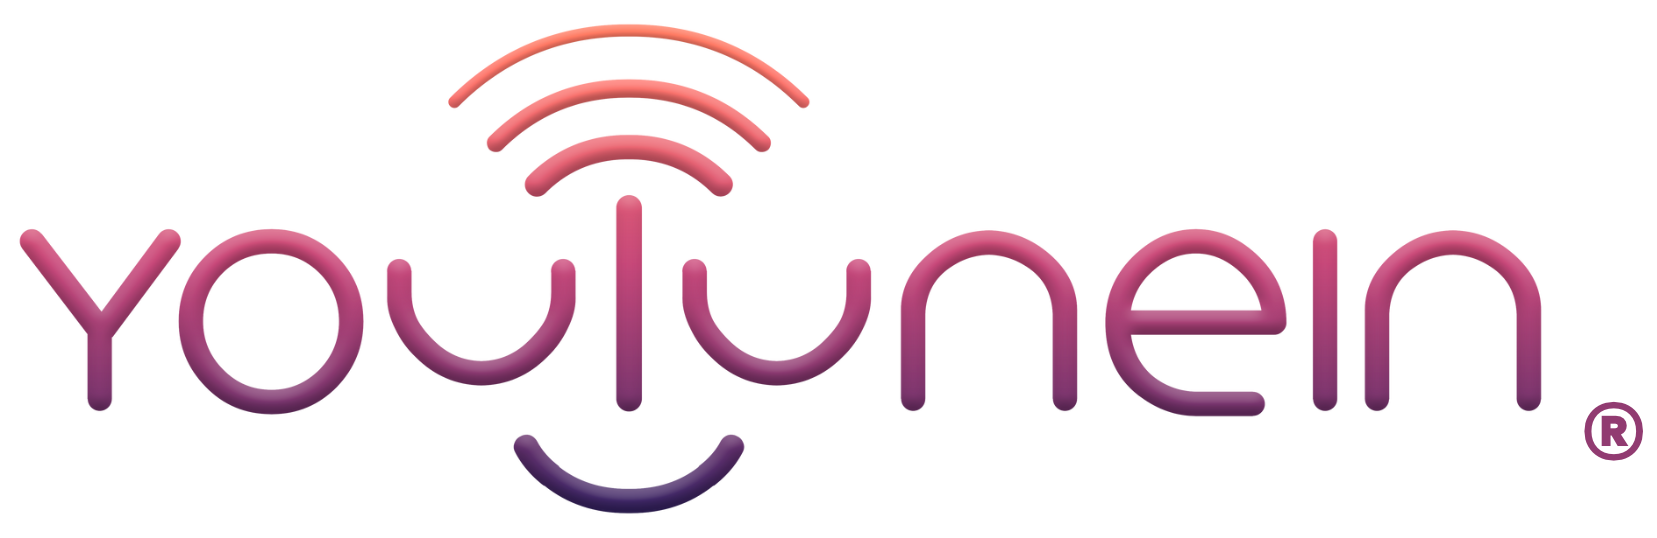 youtunein-logo-registered